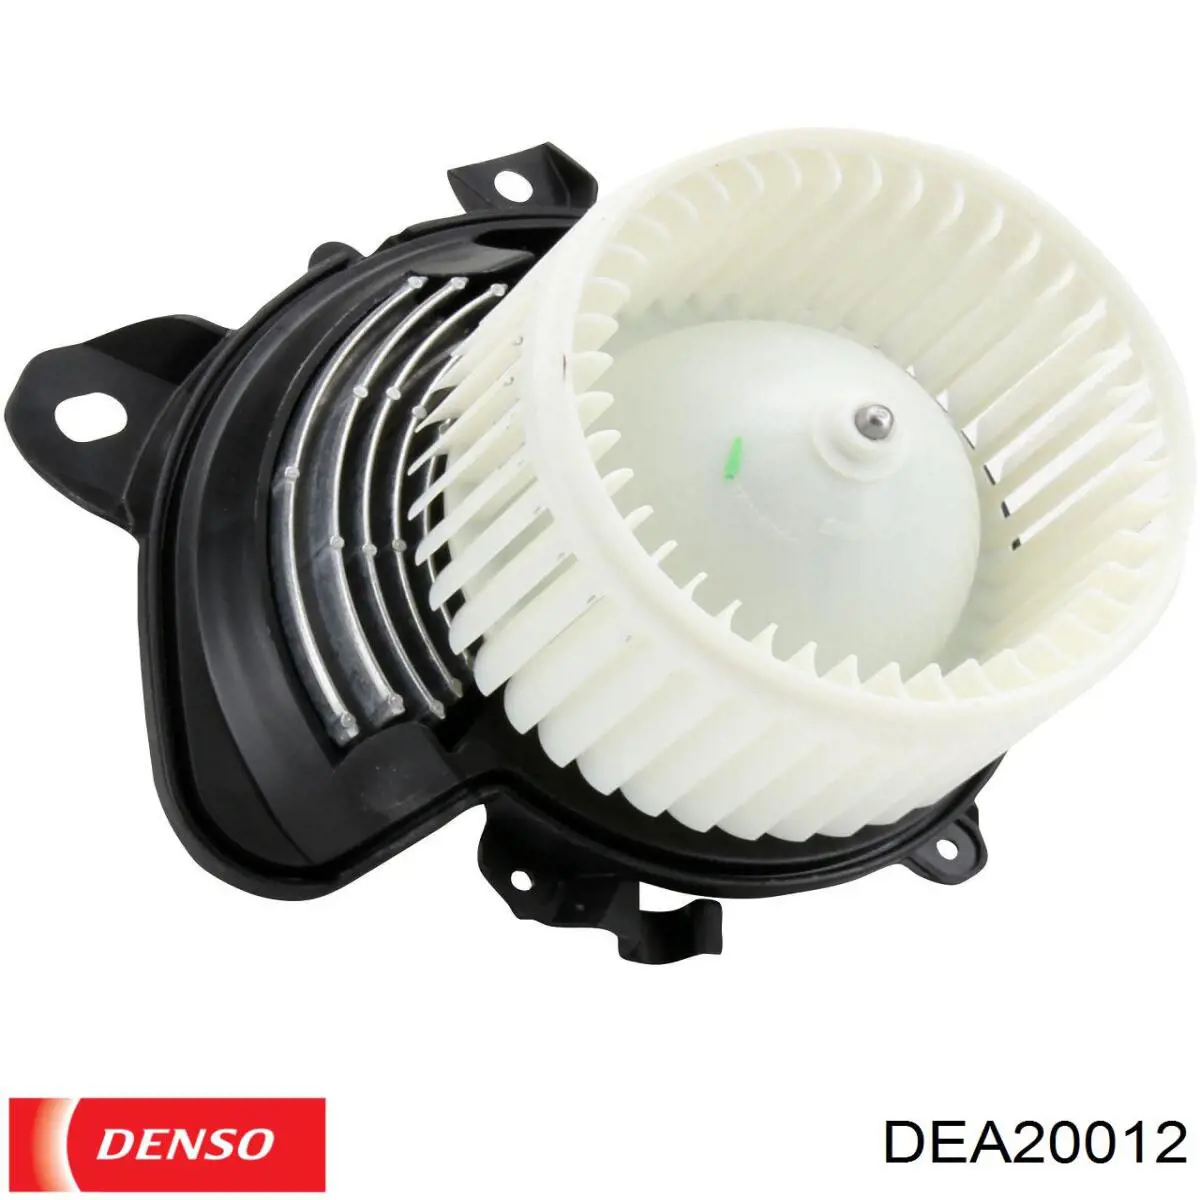 DEA09047 NPS motor de ventilador aire acondicionado